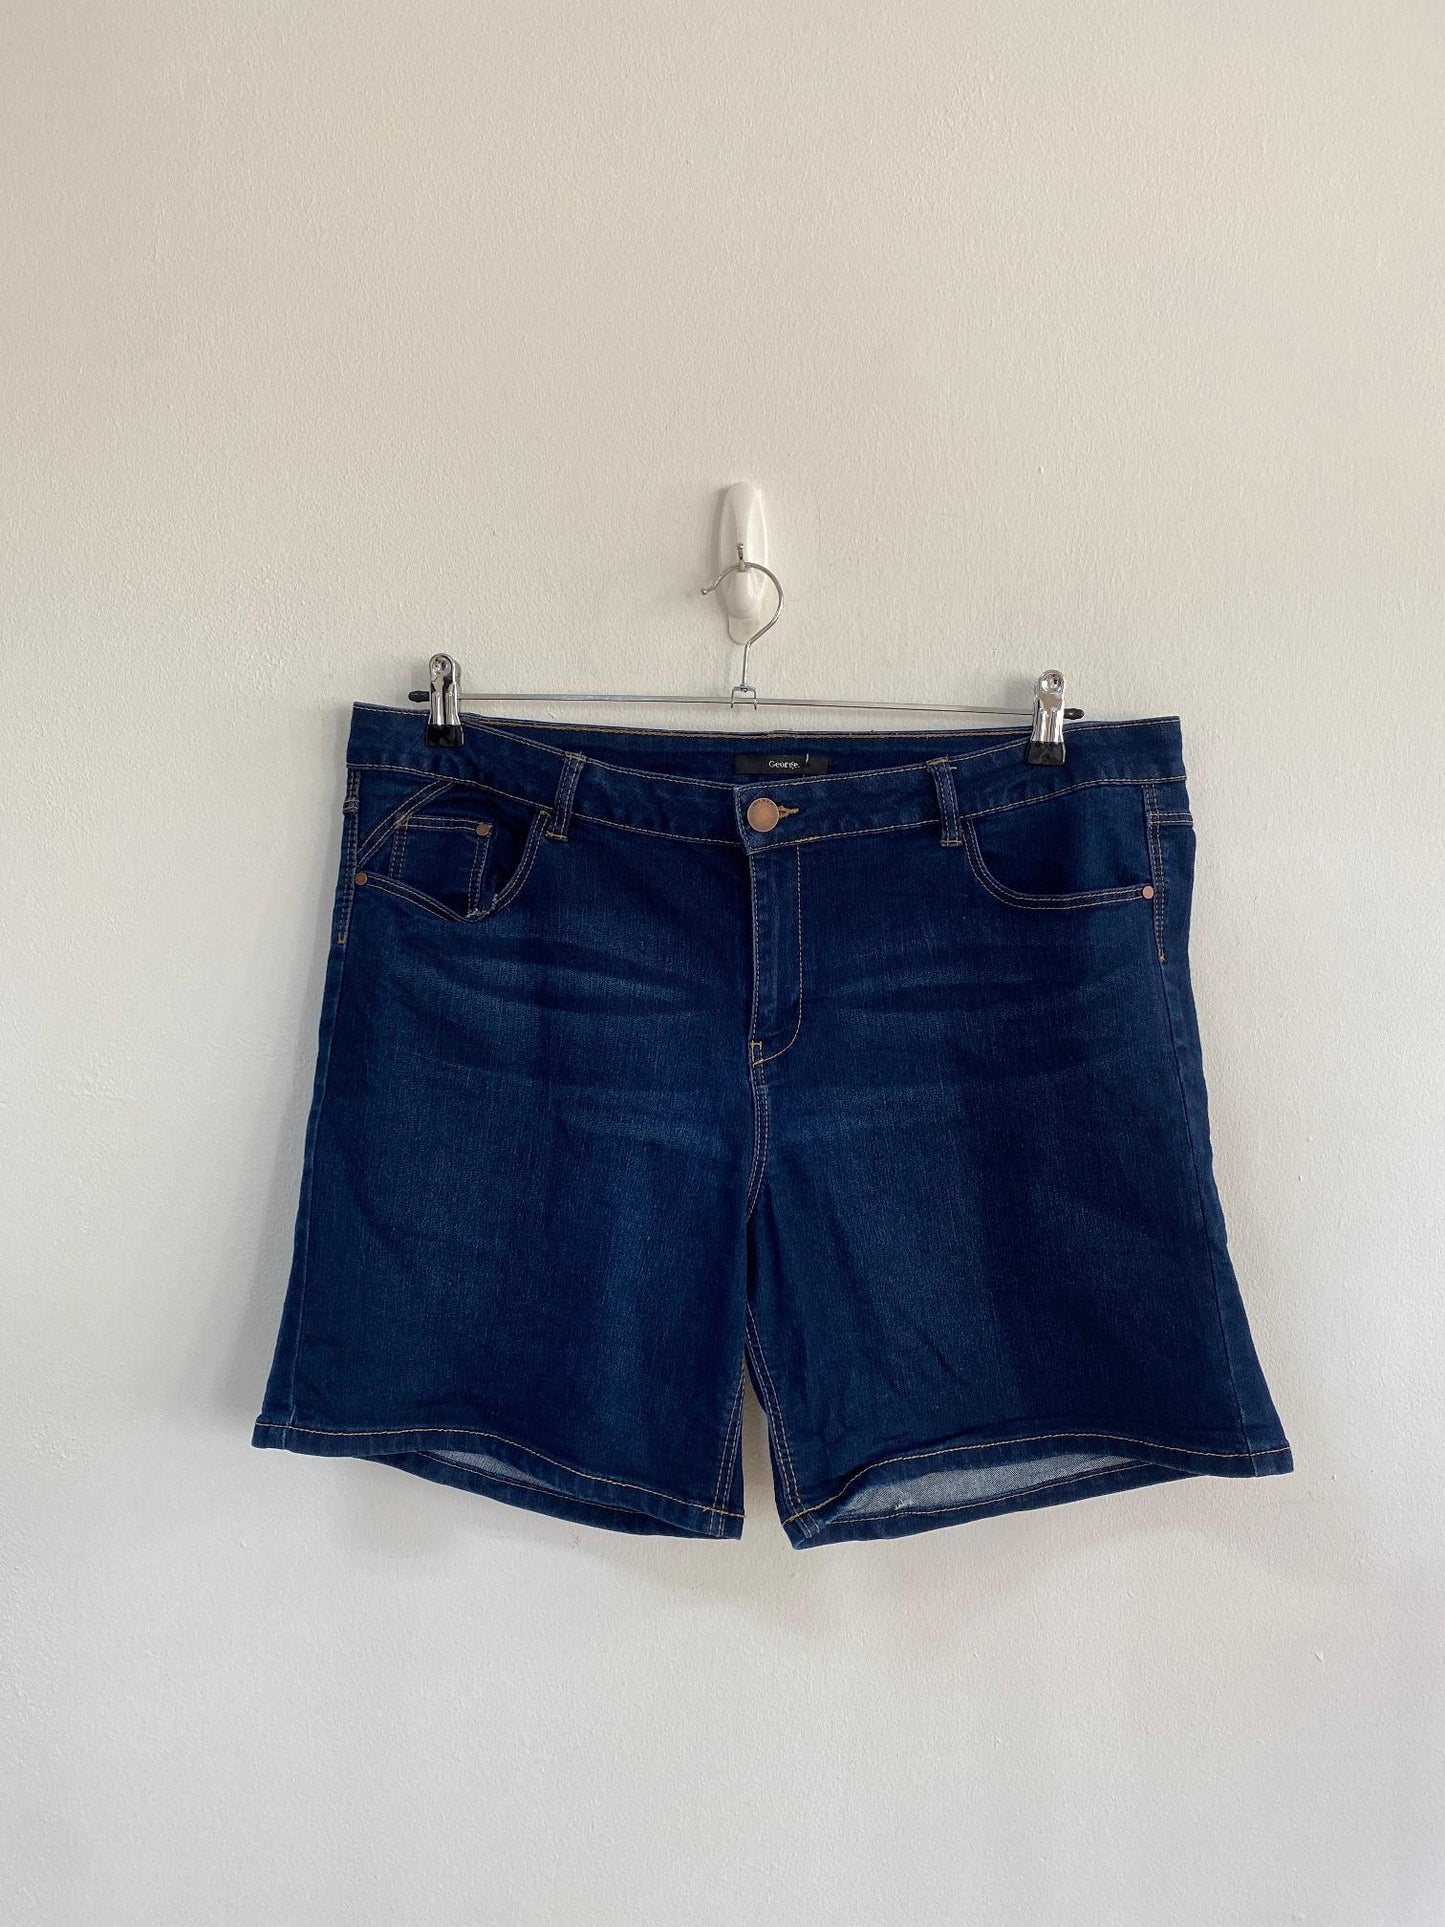 Dark wash denim shorts- High Rise, George, Size 18 (Polyester, Elastane, Cotton)